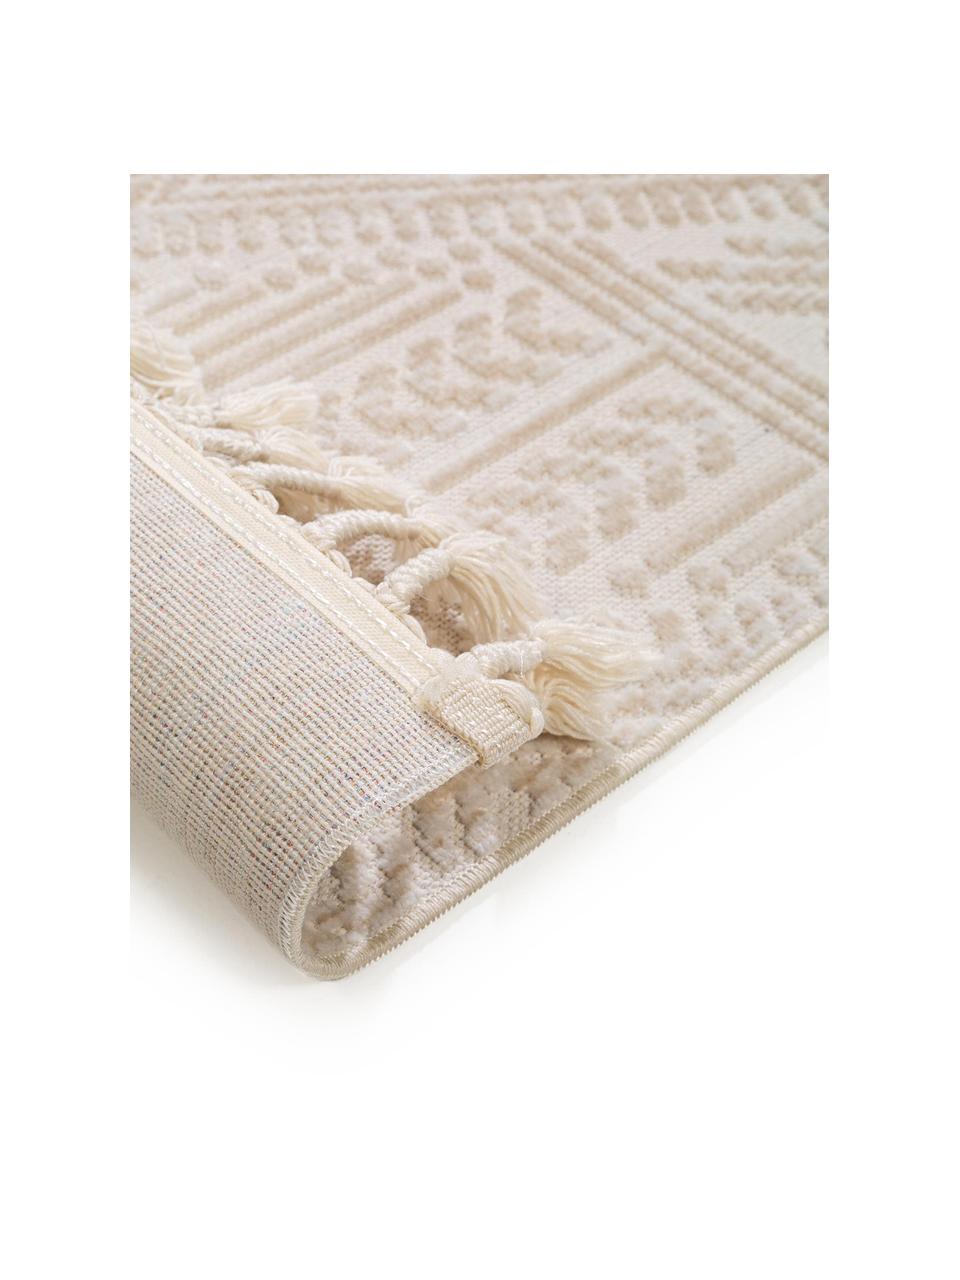 Loper Laila Tang met hoog-laag effect in beige/crèmekleur, Bovenzijde: polyester, Onderzijde: katoen, Crèmekleurig, B 80 x L 240 cm